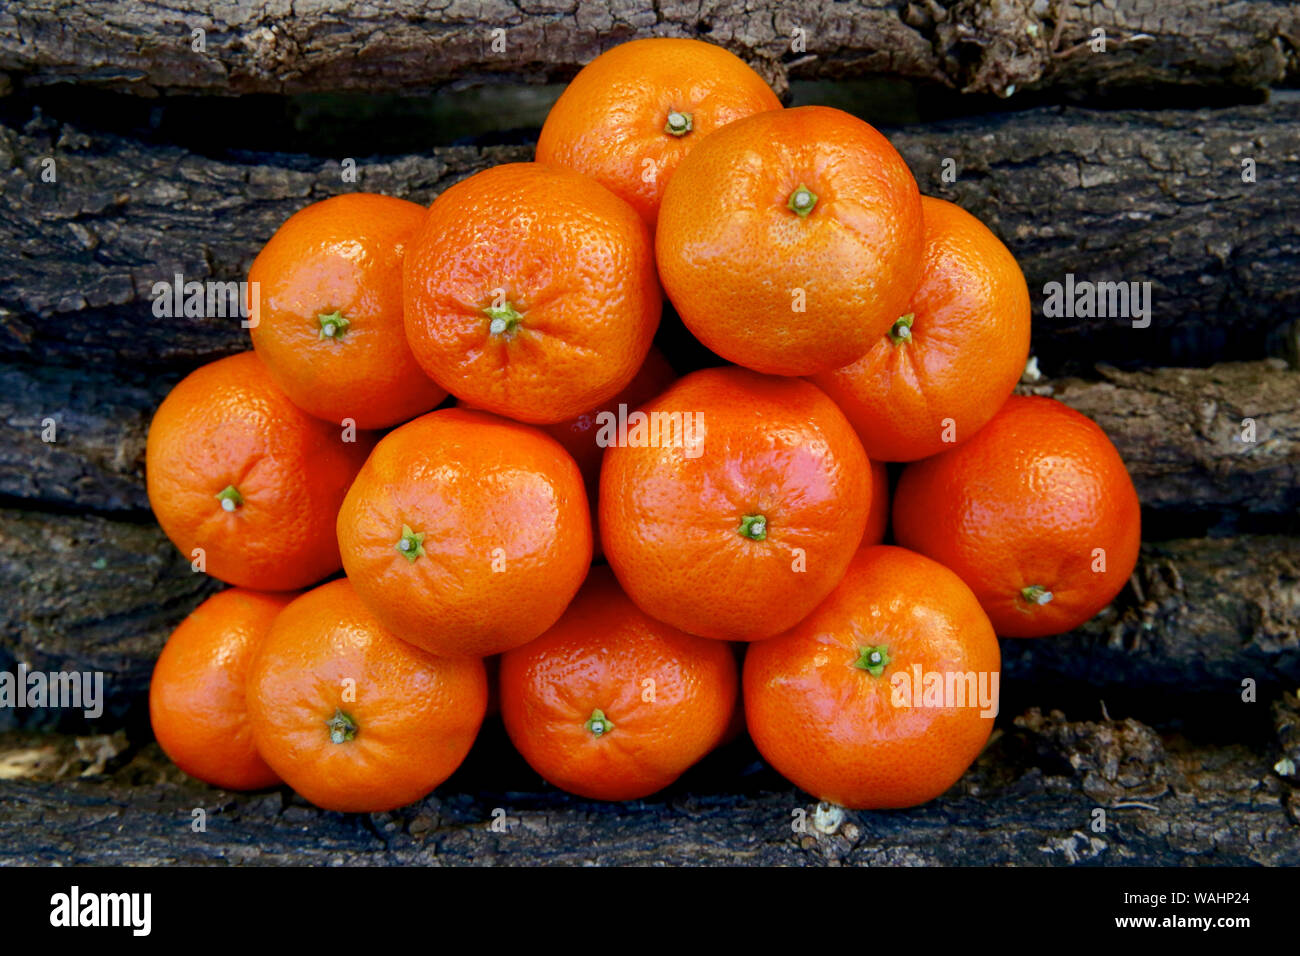 Mandarins. Stock Photo